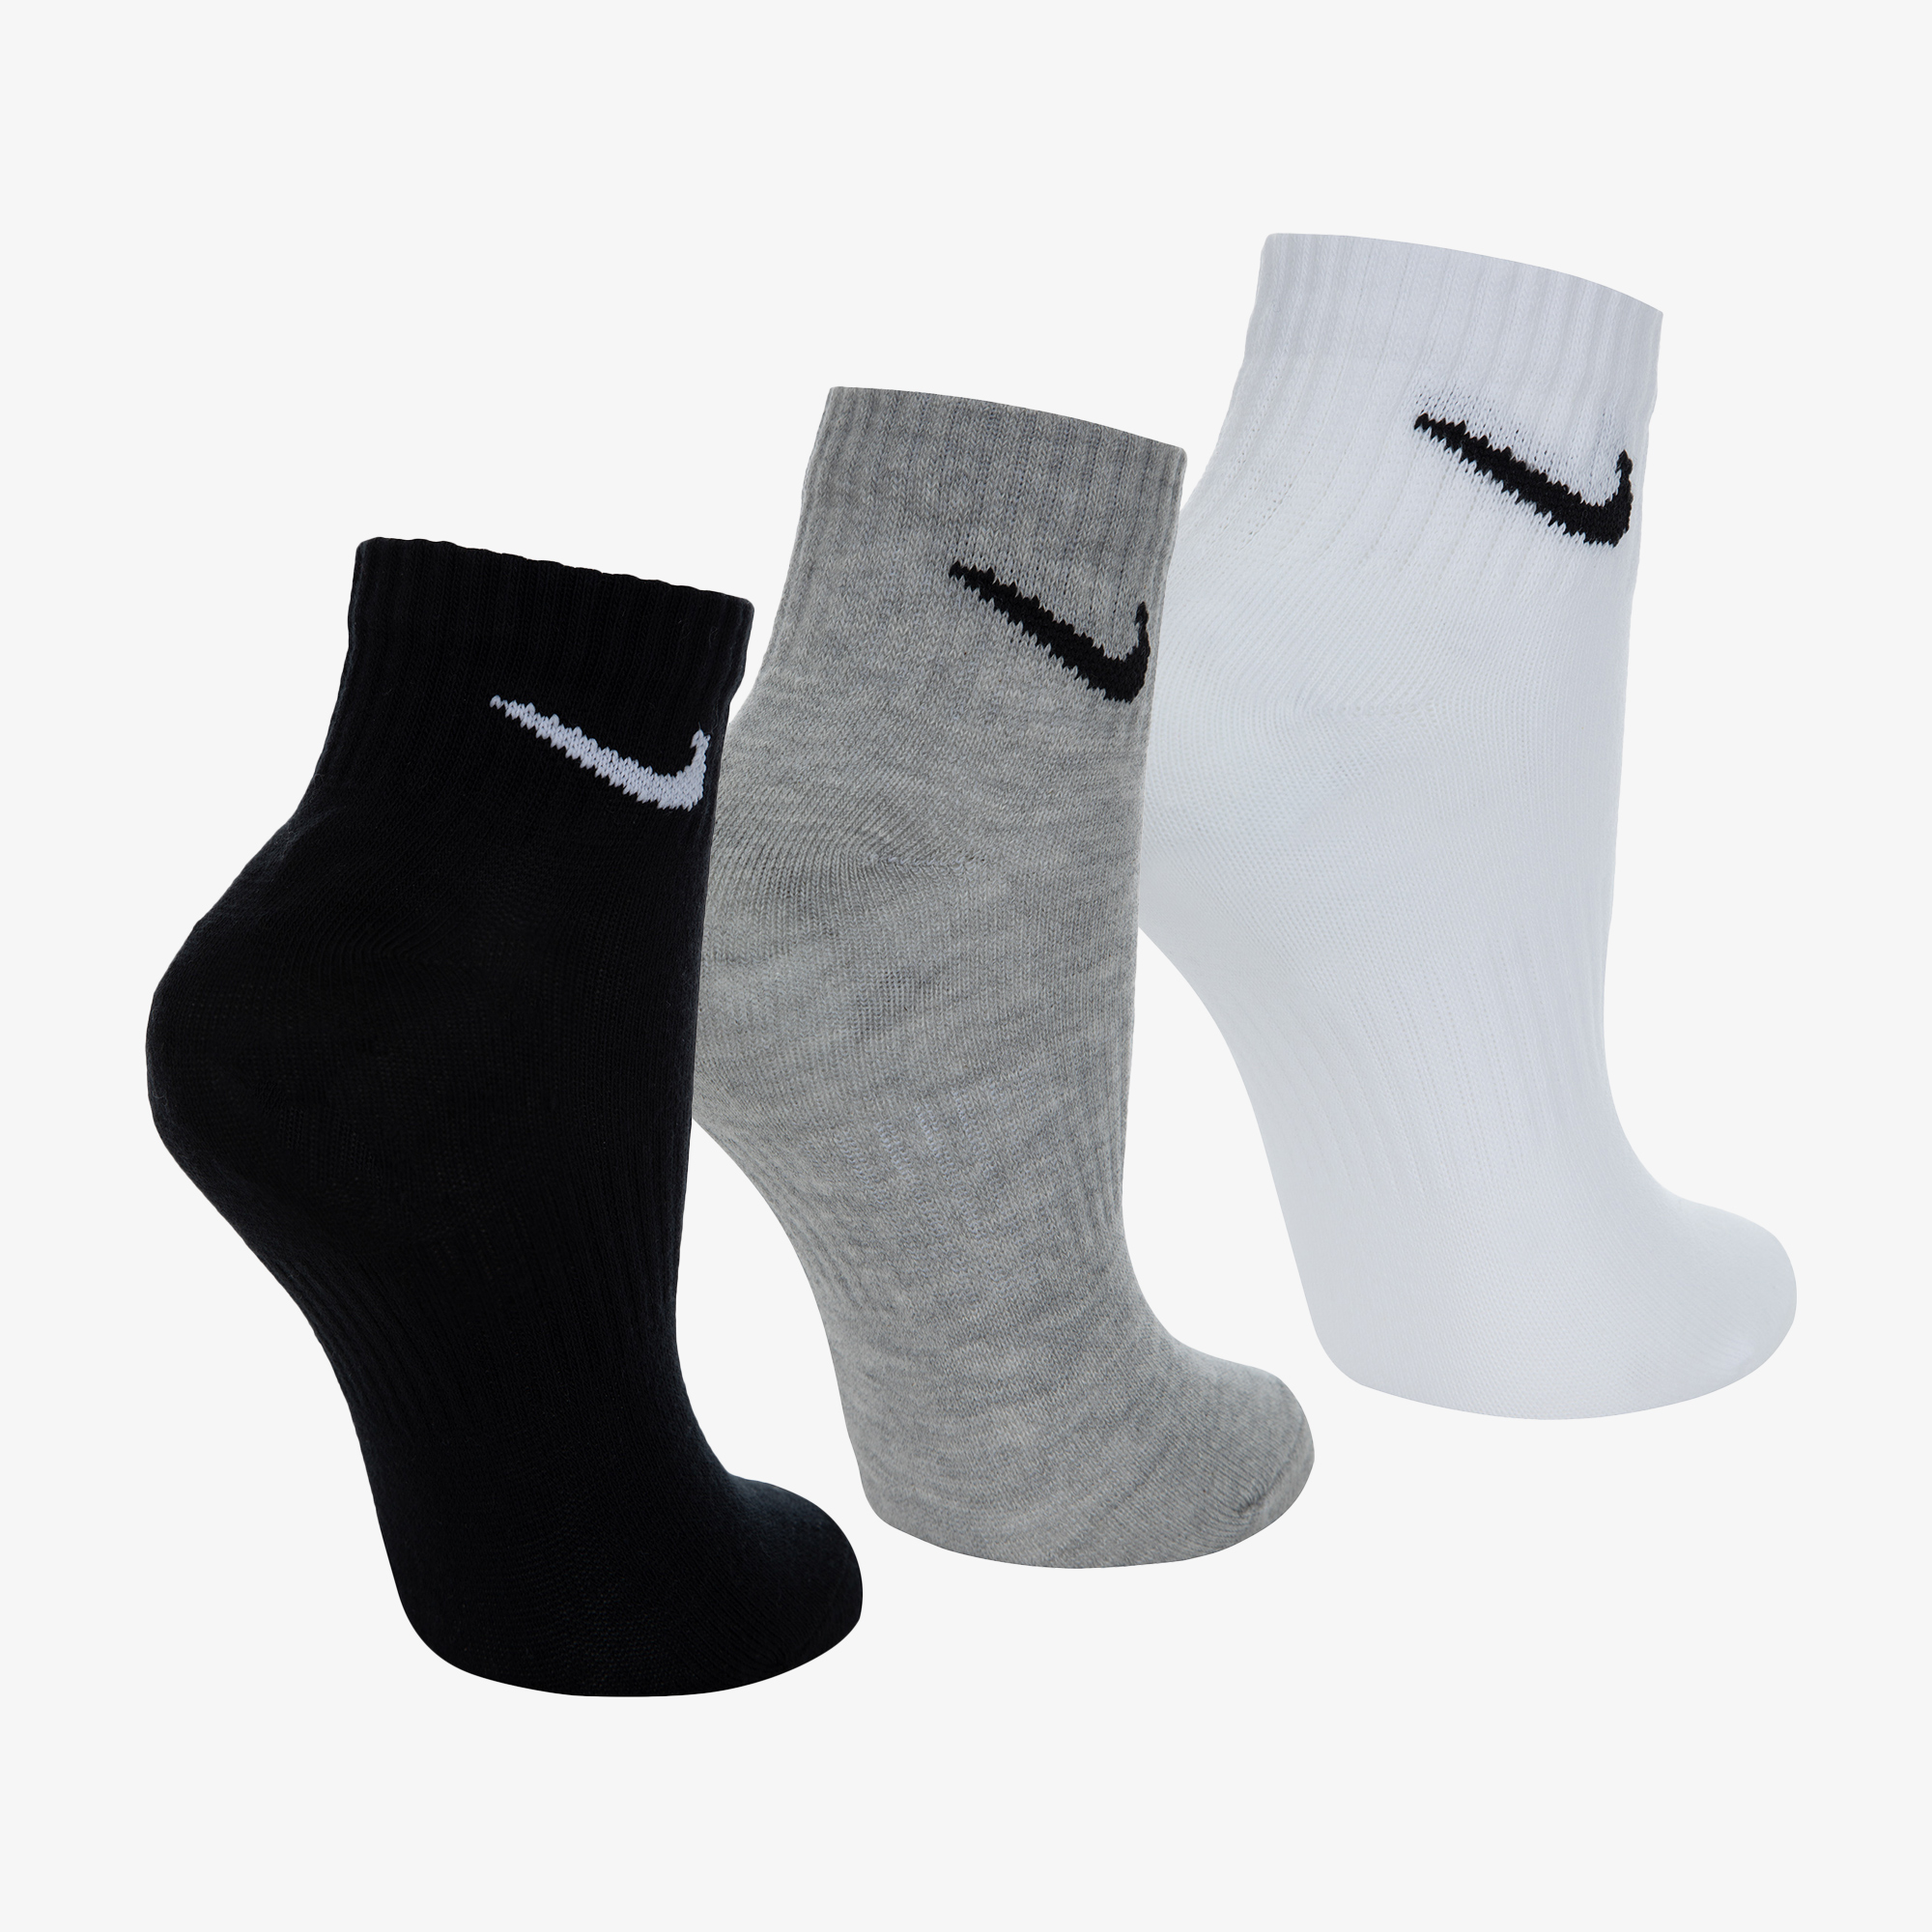 Носки Nike Nike Everyday Lightweight, 3 пары SX7677N06-901, цвет серый, размер 33-37 SX7677-901 - фото 2